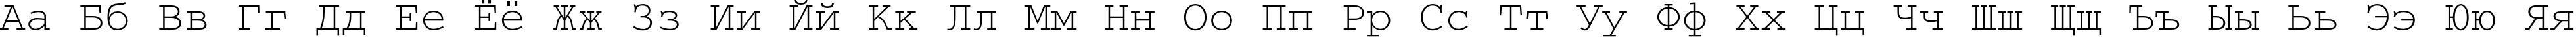 Пример написания русского алфавита шрифтом CourierC